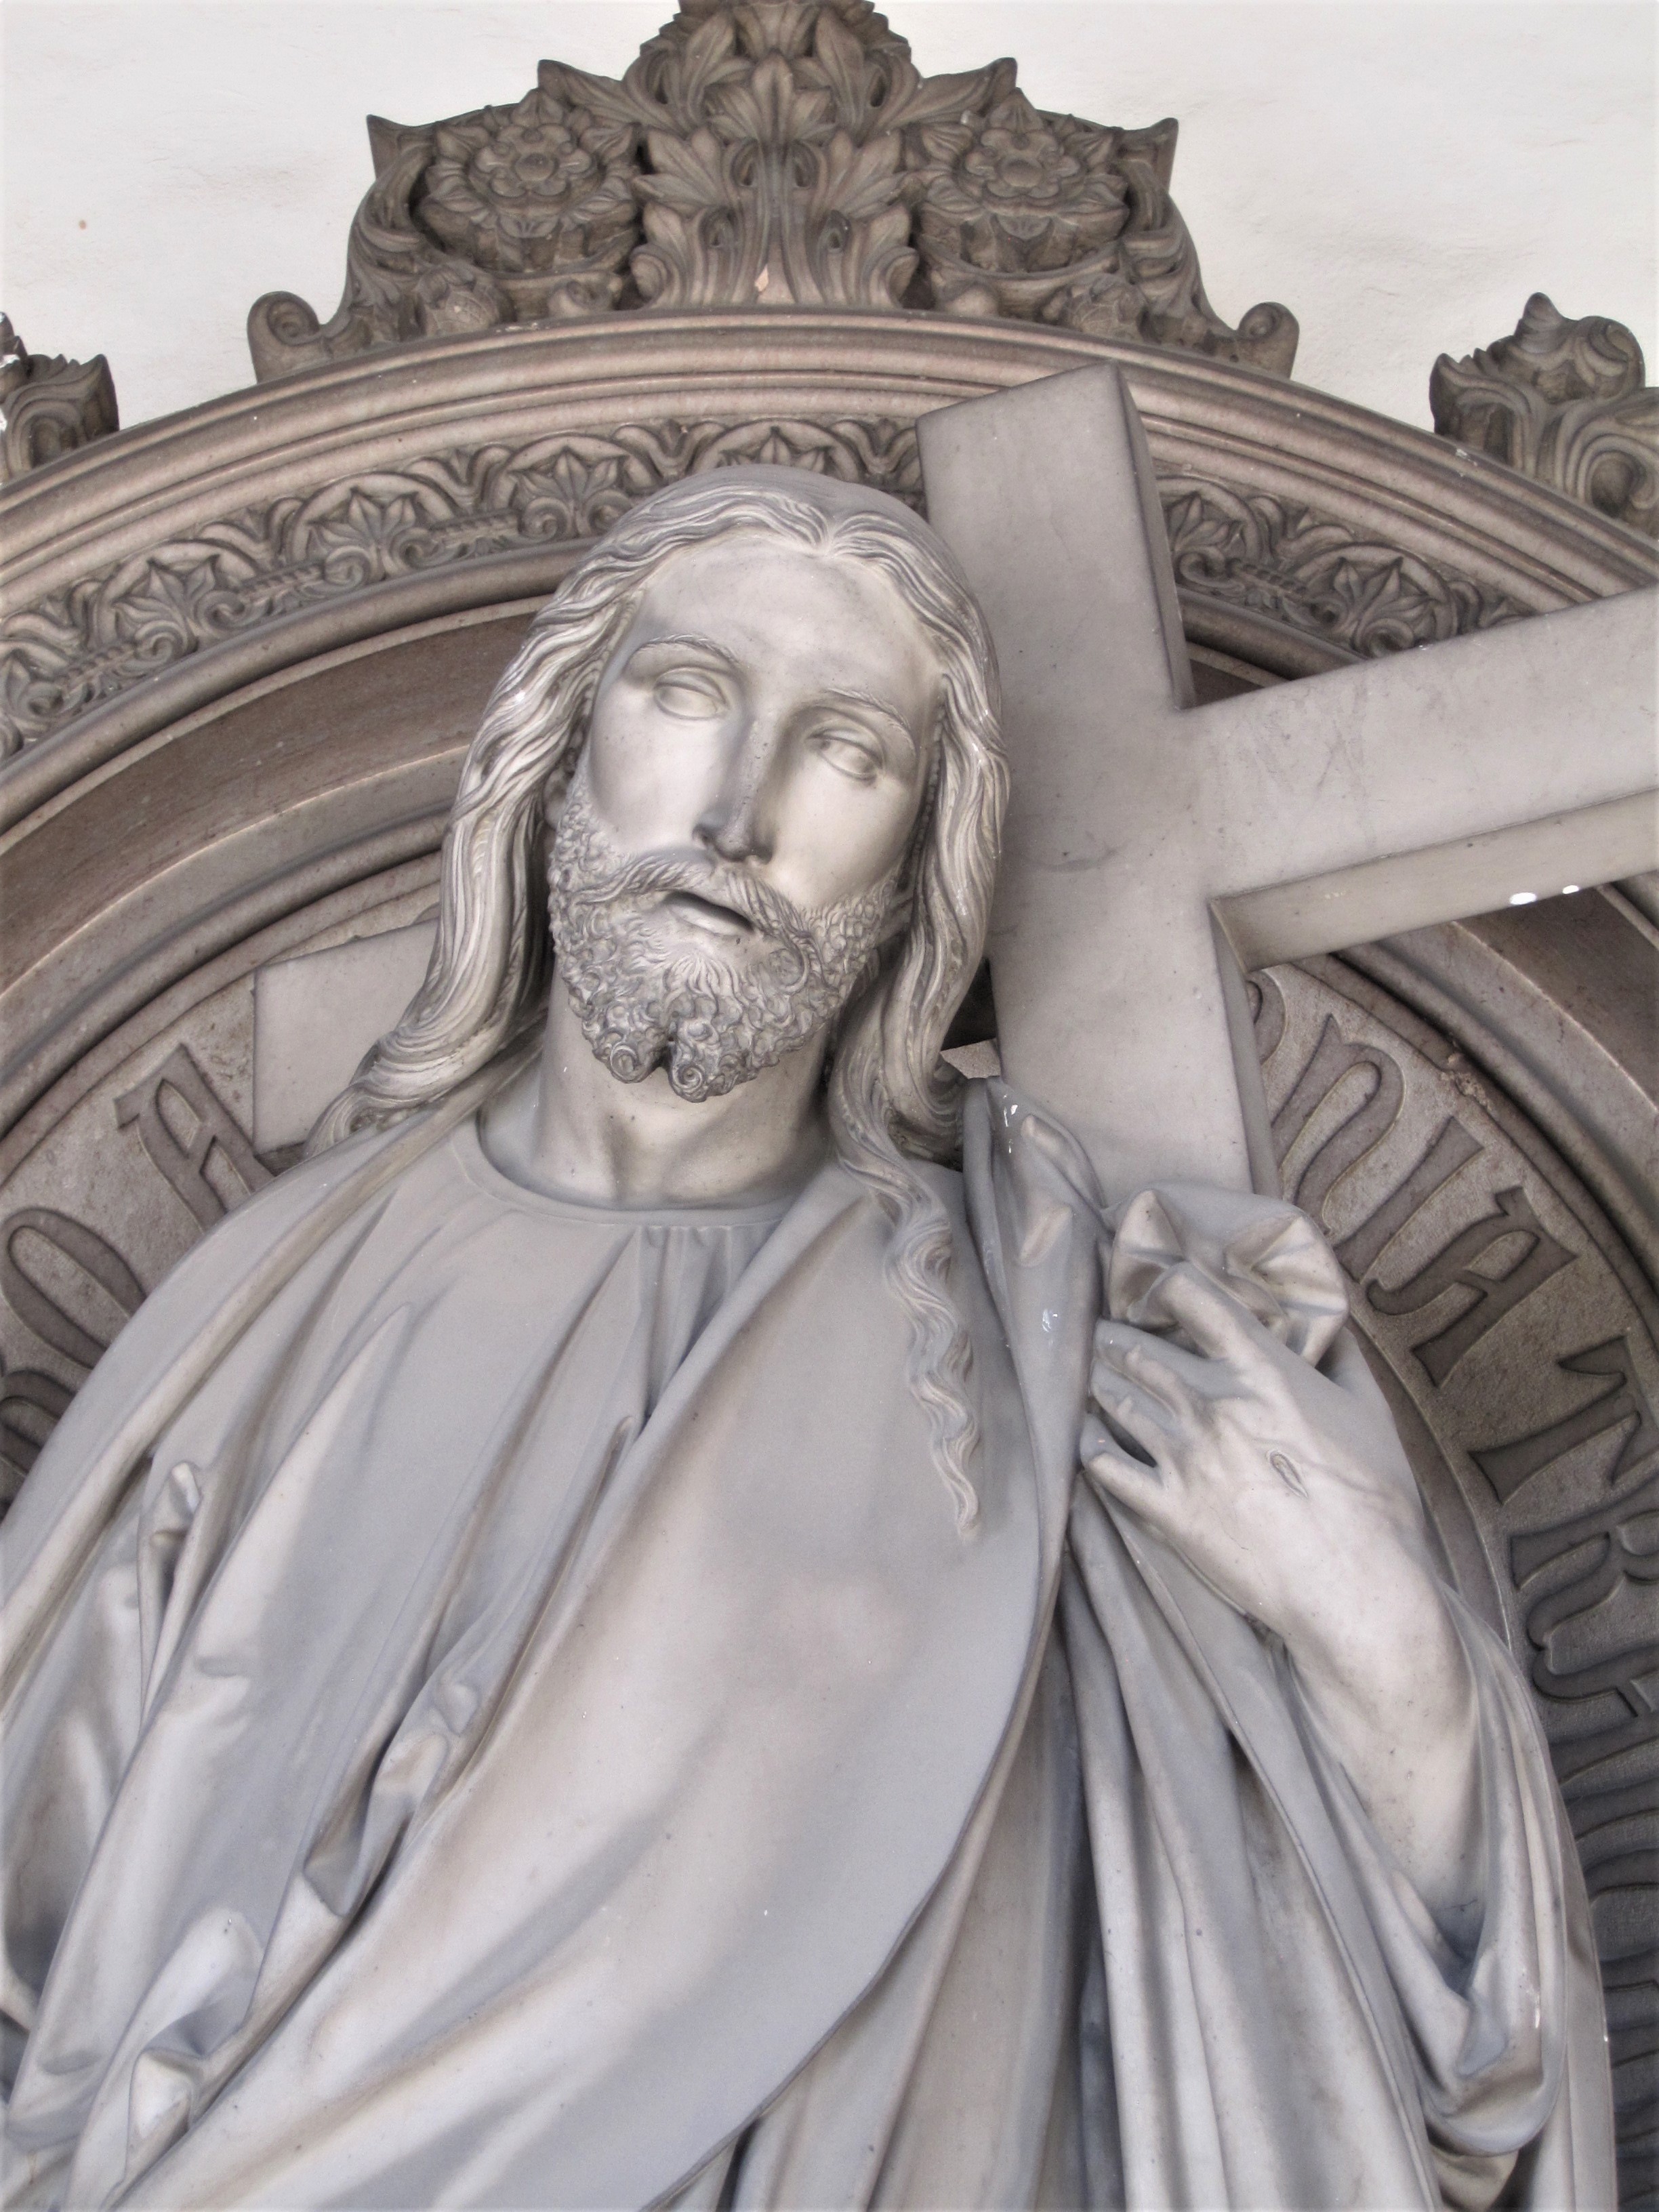 Joseph Knabl (1819 – 1881), Christus (Detailaufnahme), 1865, Carrara-Marmor, Innsbruck, Städtischer Westfriedhof, Nordarkade, westlicher Abschnitt (Nr. 145, Grab Familie Ortlieb)